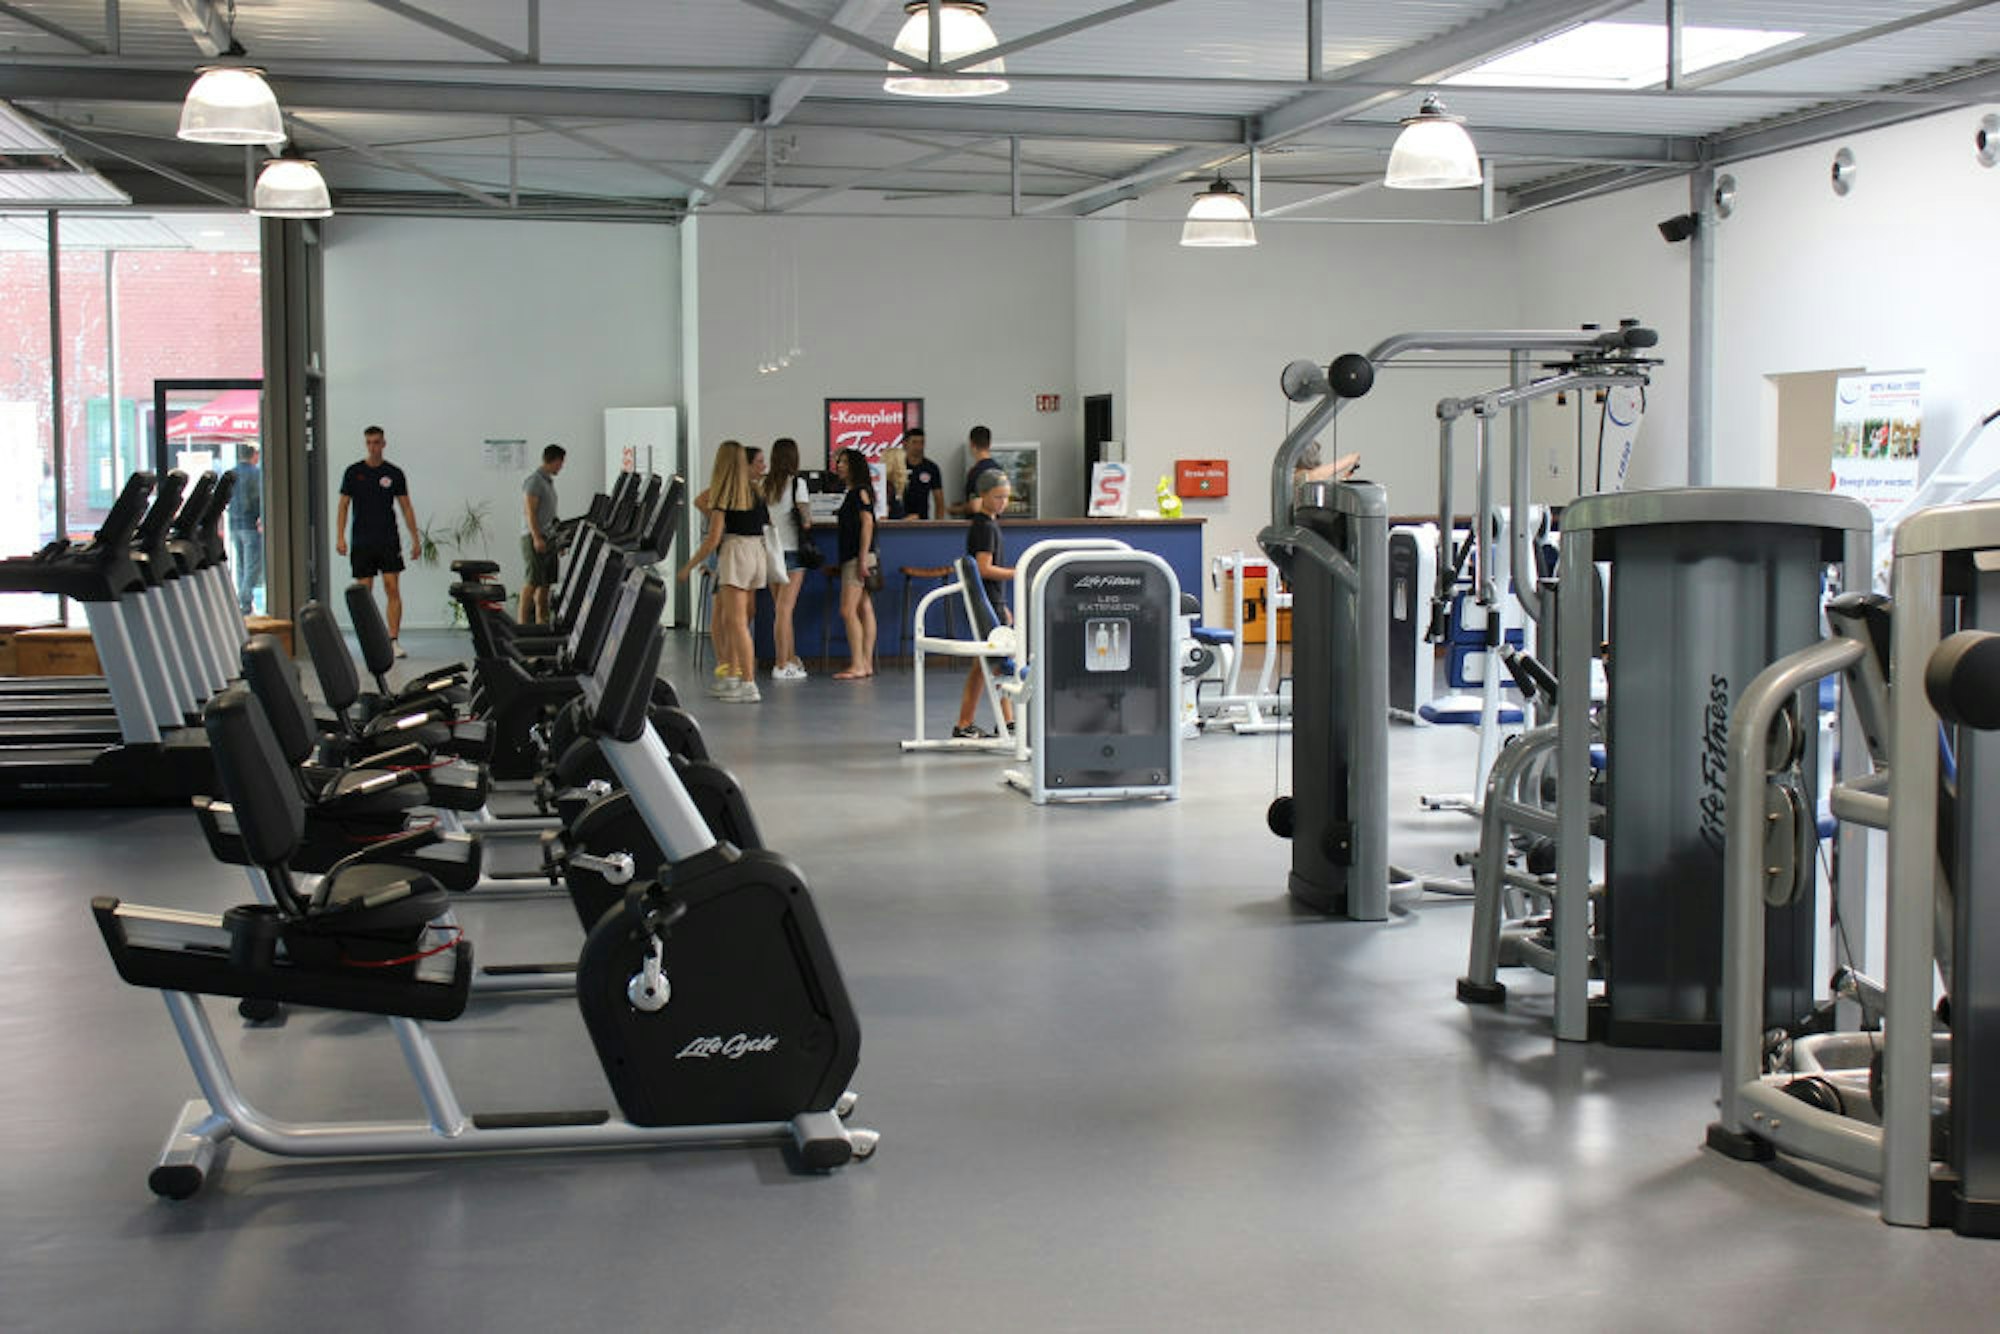 Der große Gerätesaal bietet Möglichkeiten für Fitness und Krafttraining.